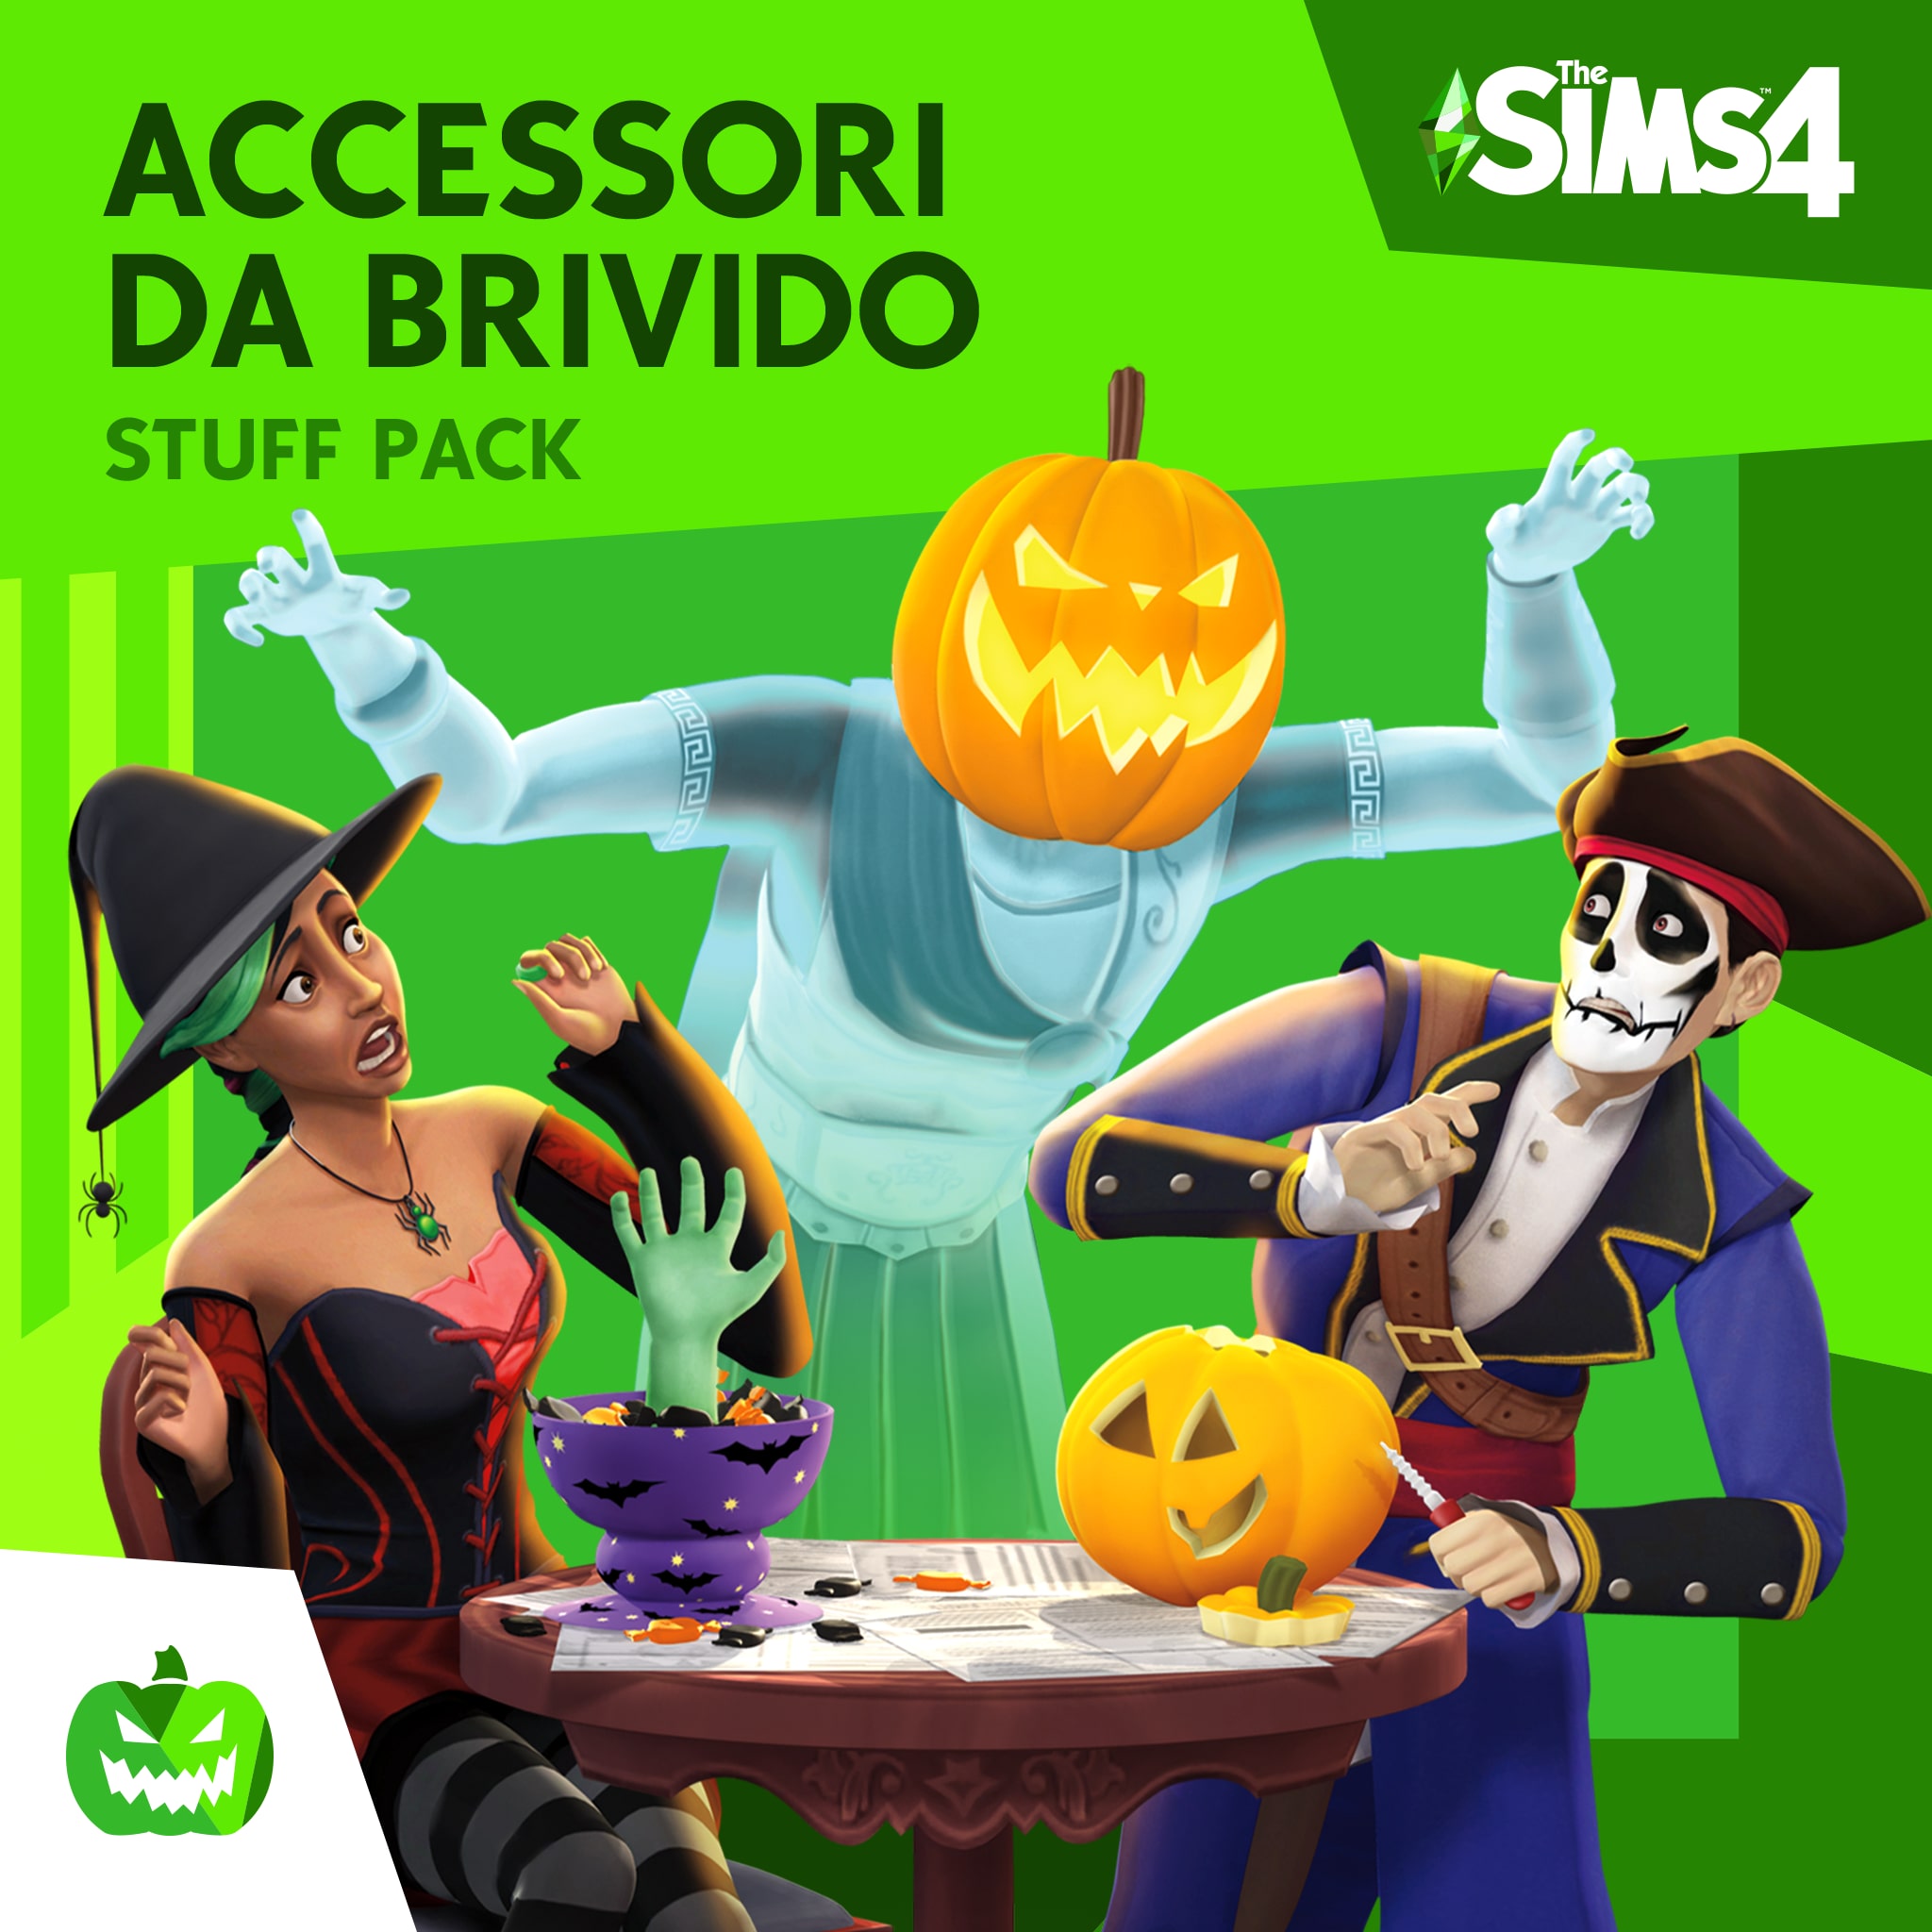 The Sims™ 4 Accessori da Brivido Stuff